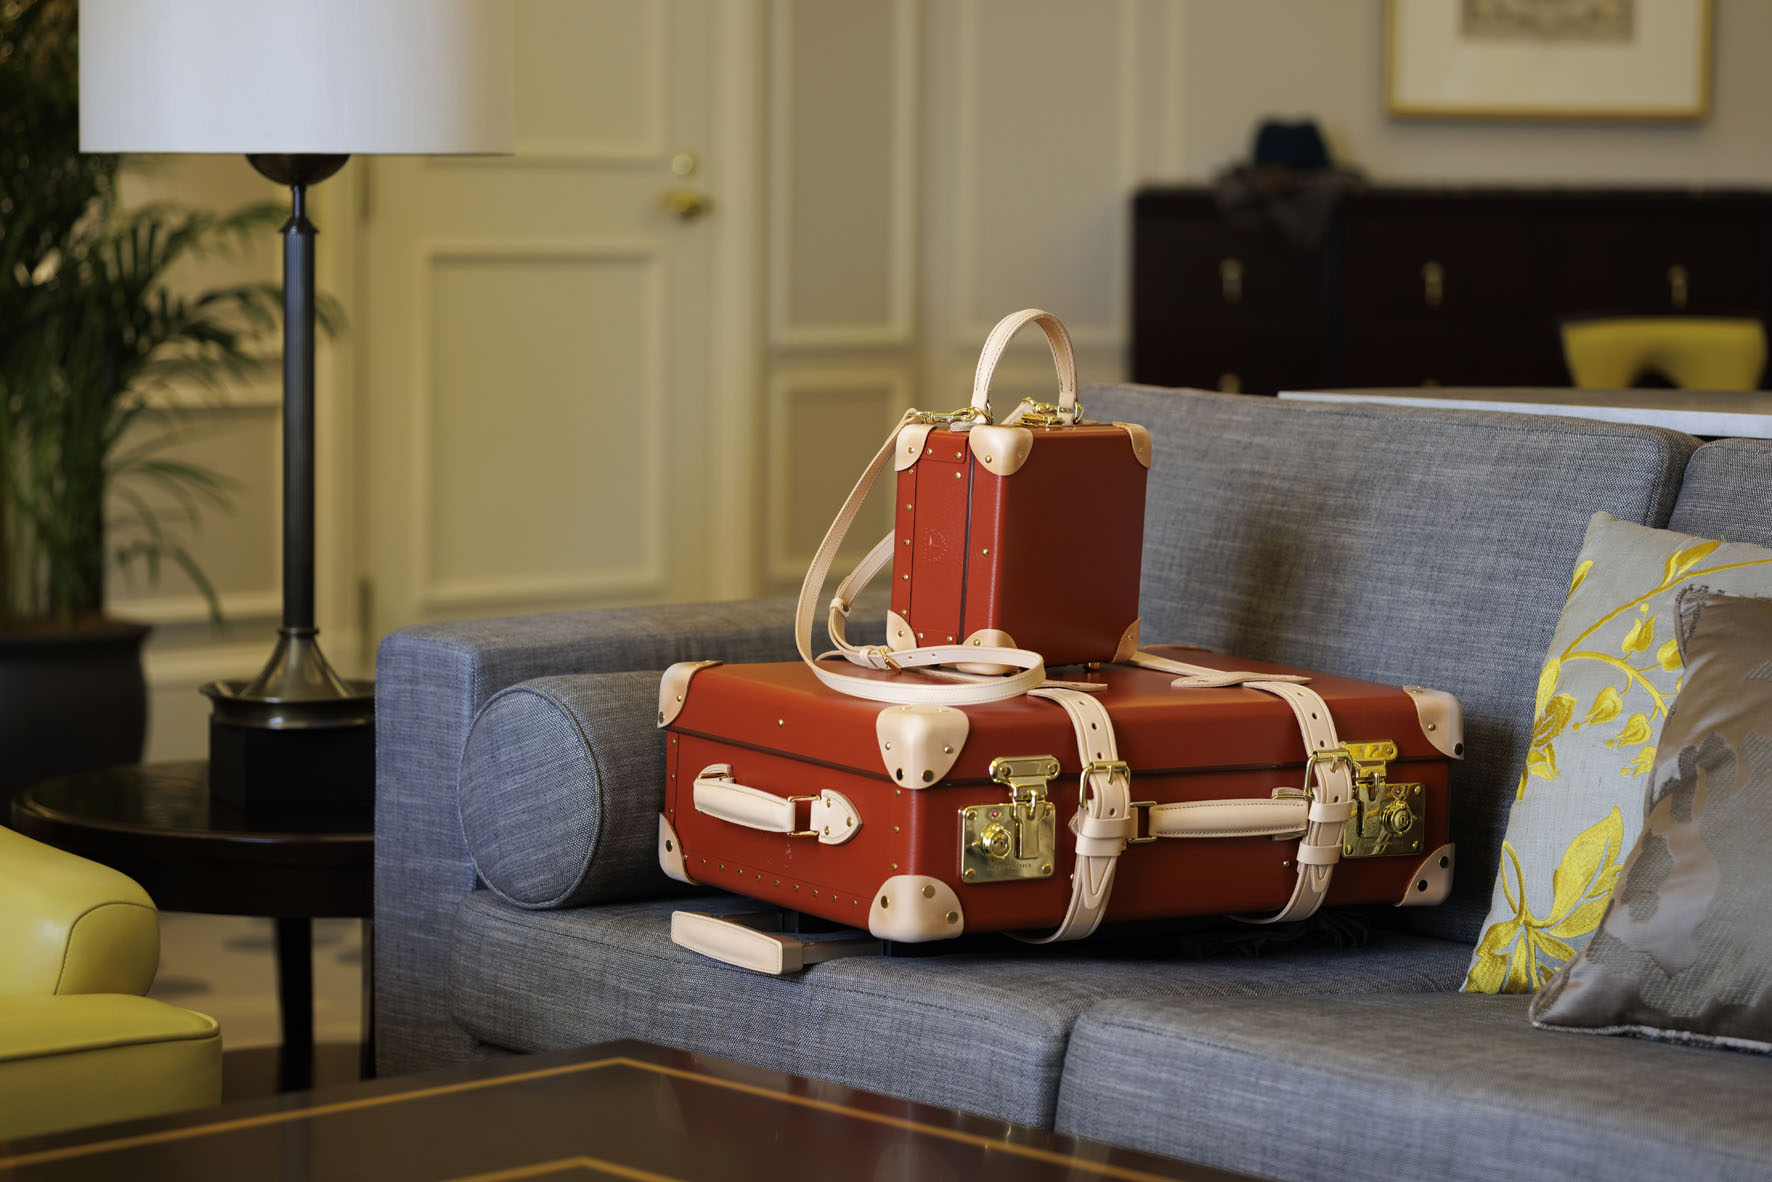 【東京ステーションホテル】英国ブランド「グローブ・トロッター」社製 ホテルオリジナルスーツケースの販売決定